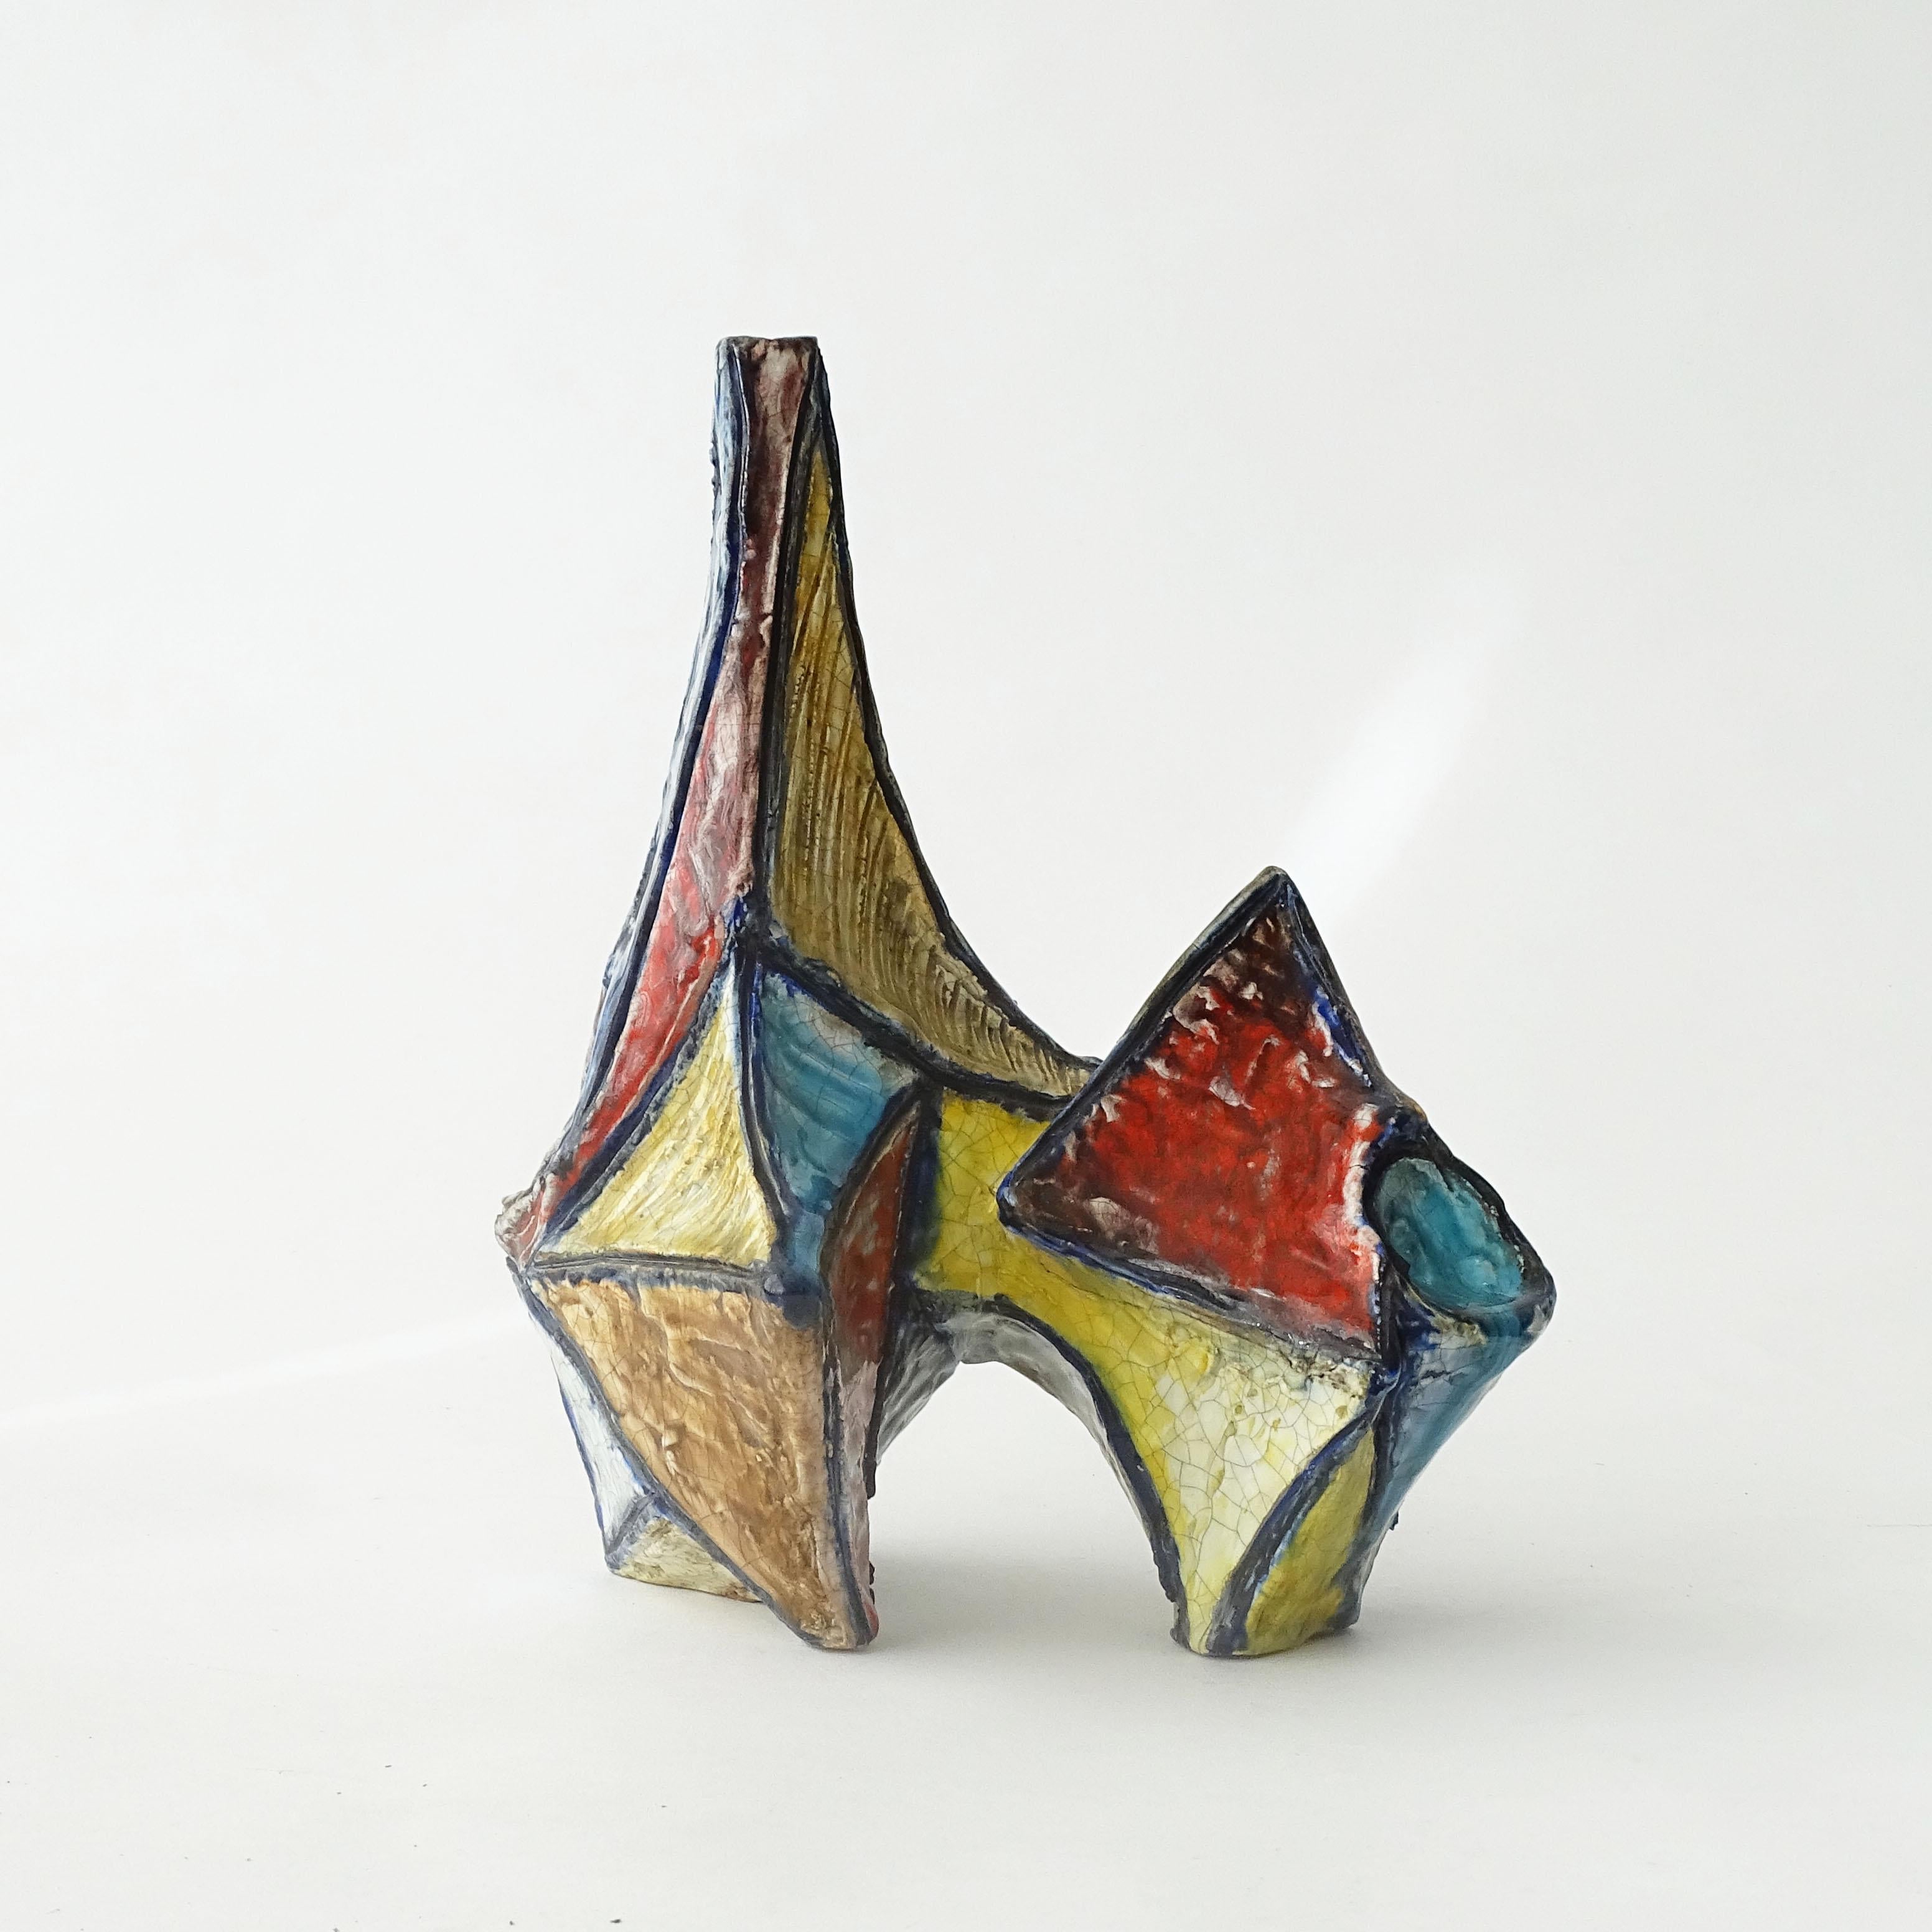 Marcello Fantoni, frühe kubistische Vase, Italien 1950er Jahre
Vollständig unterzeichnet